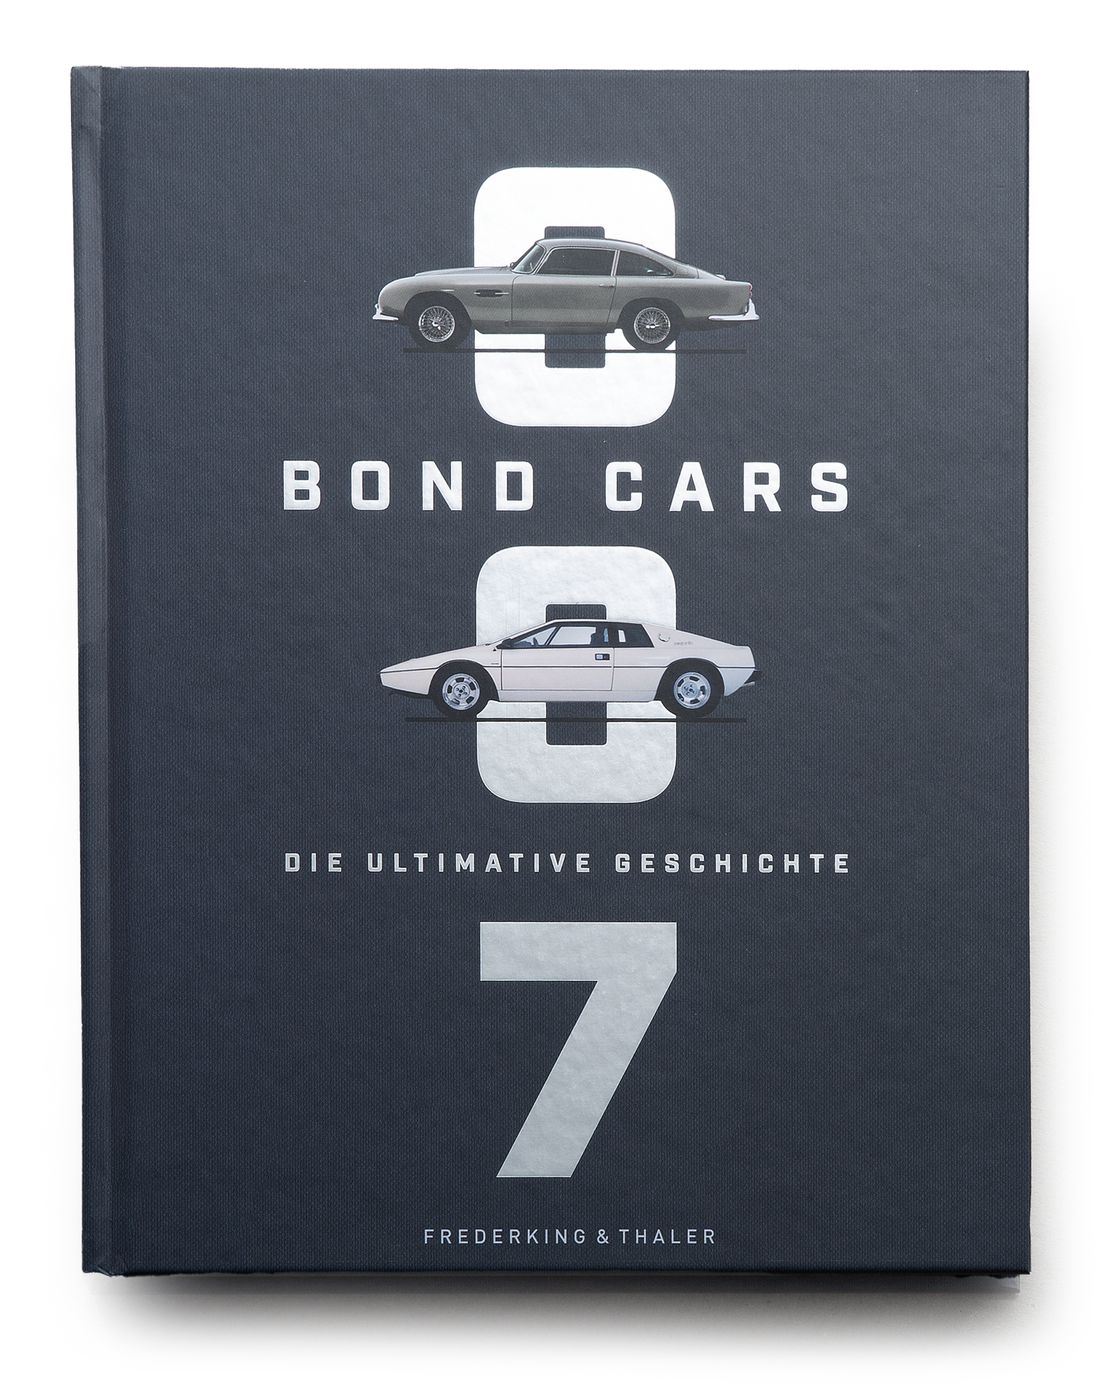 Bond Cars
Bond Cars
Bond Cars
Los coches de Bond